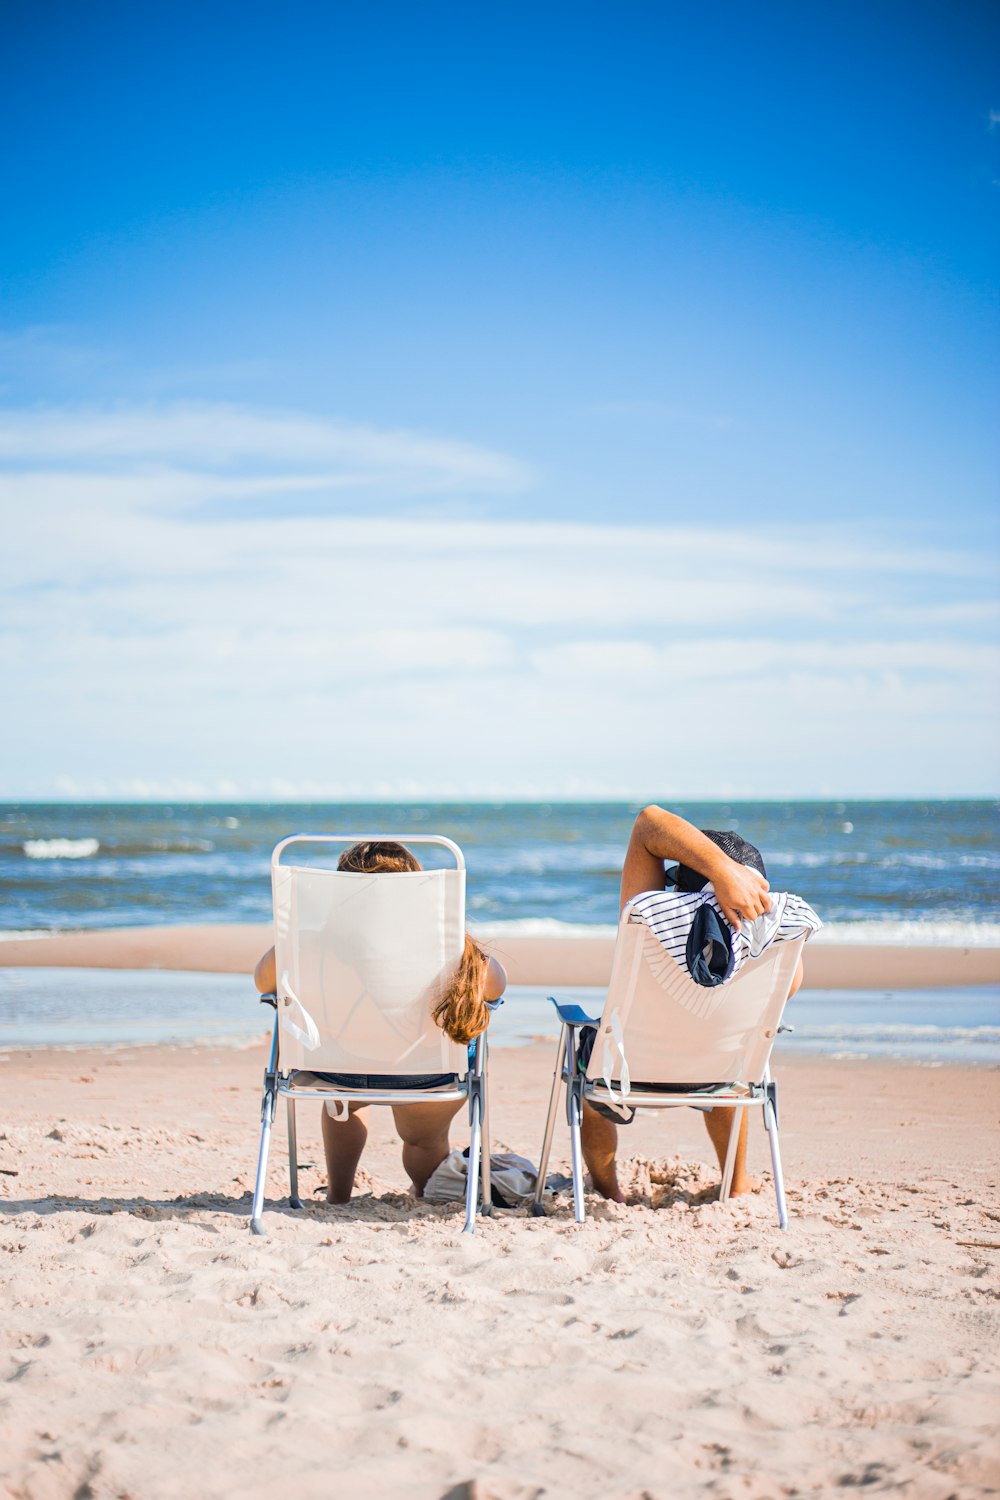 donna in abito a righe bianche e nere seduta sulla sedia bianca sulla spiaggia durante il giorno